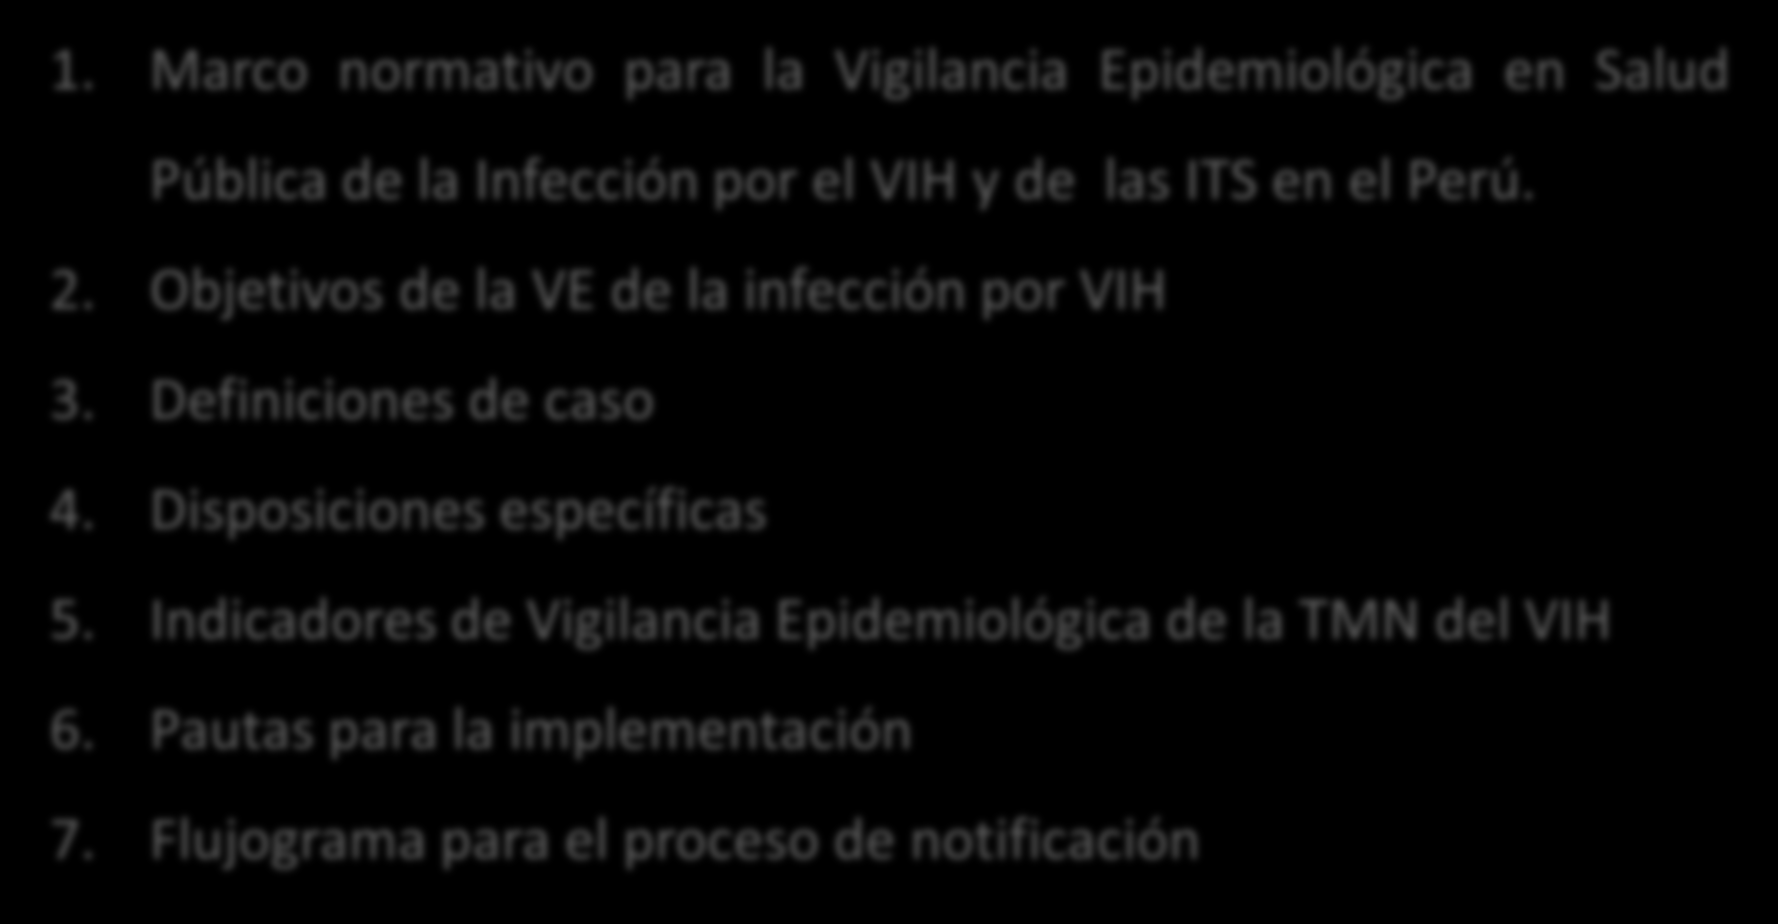 Contenidos 1. Marco normativo para la Vigilancia Epidemiológica en Salud Pública de la Infección por el VIH y de las ITS en el Perú. 2. Objetivos de la VE de la infección por VIH 3.